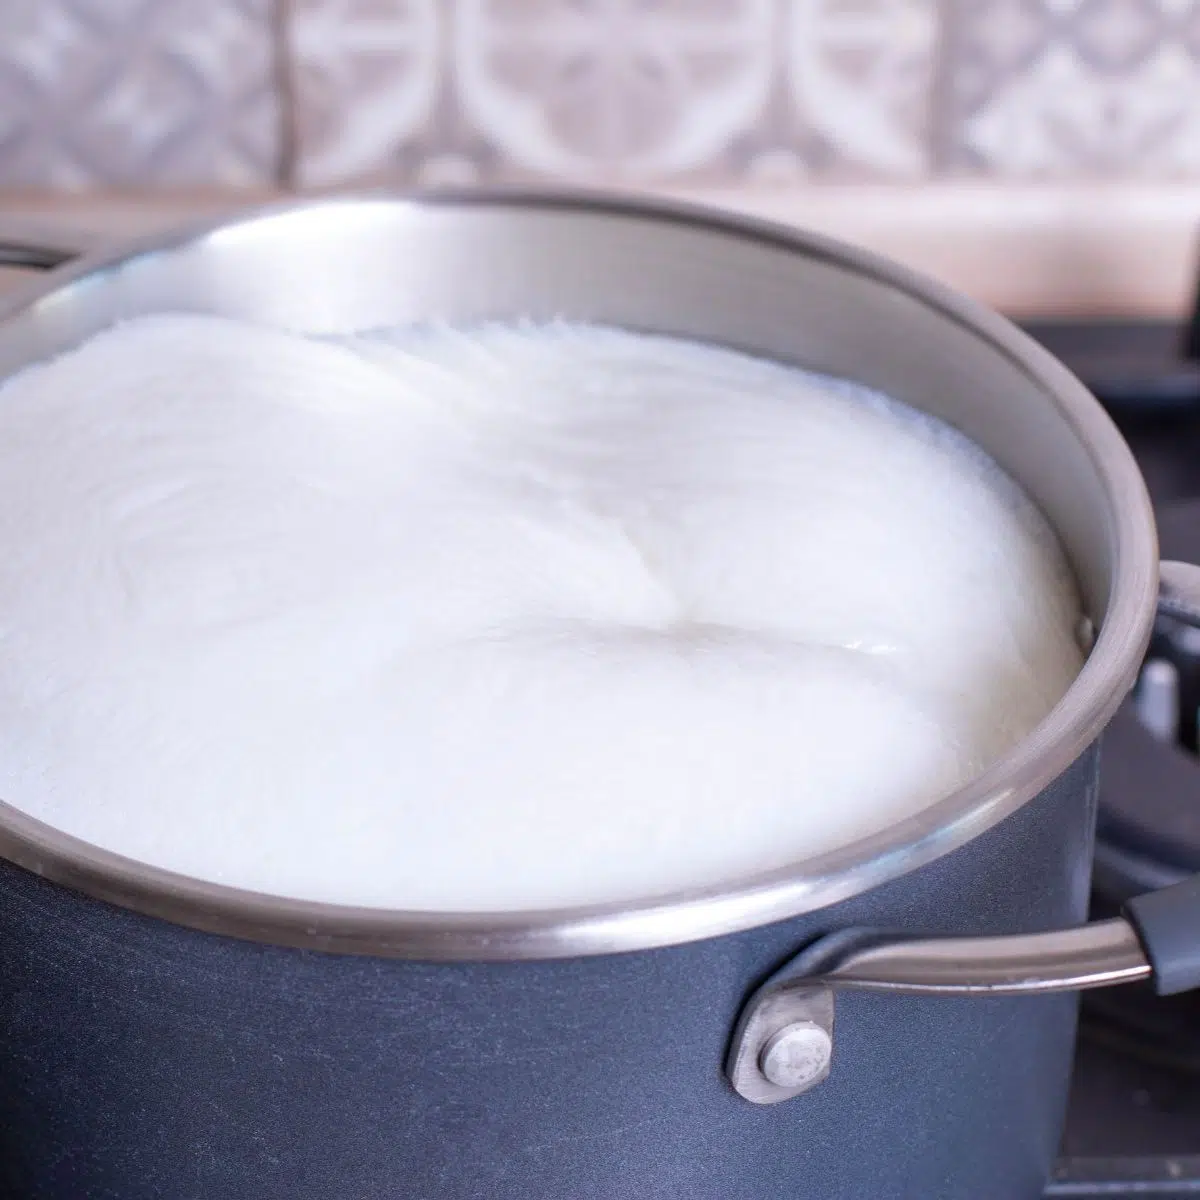 एक सॉस पैन में दूध के साथ मैश किए हुए आलू के लिए दूध को जल्दी से कैसे जलाएं।